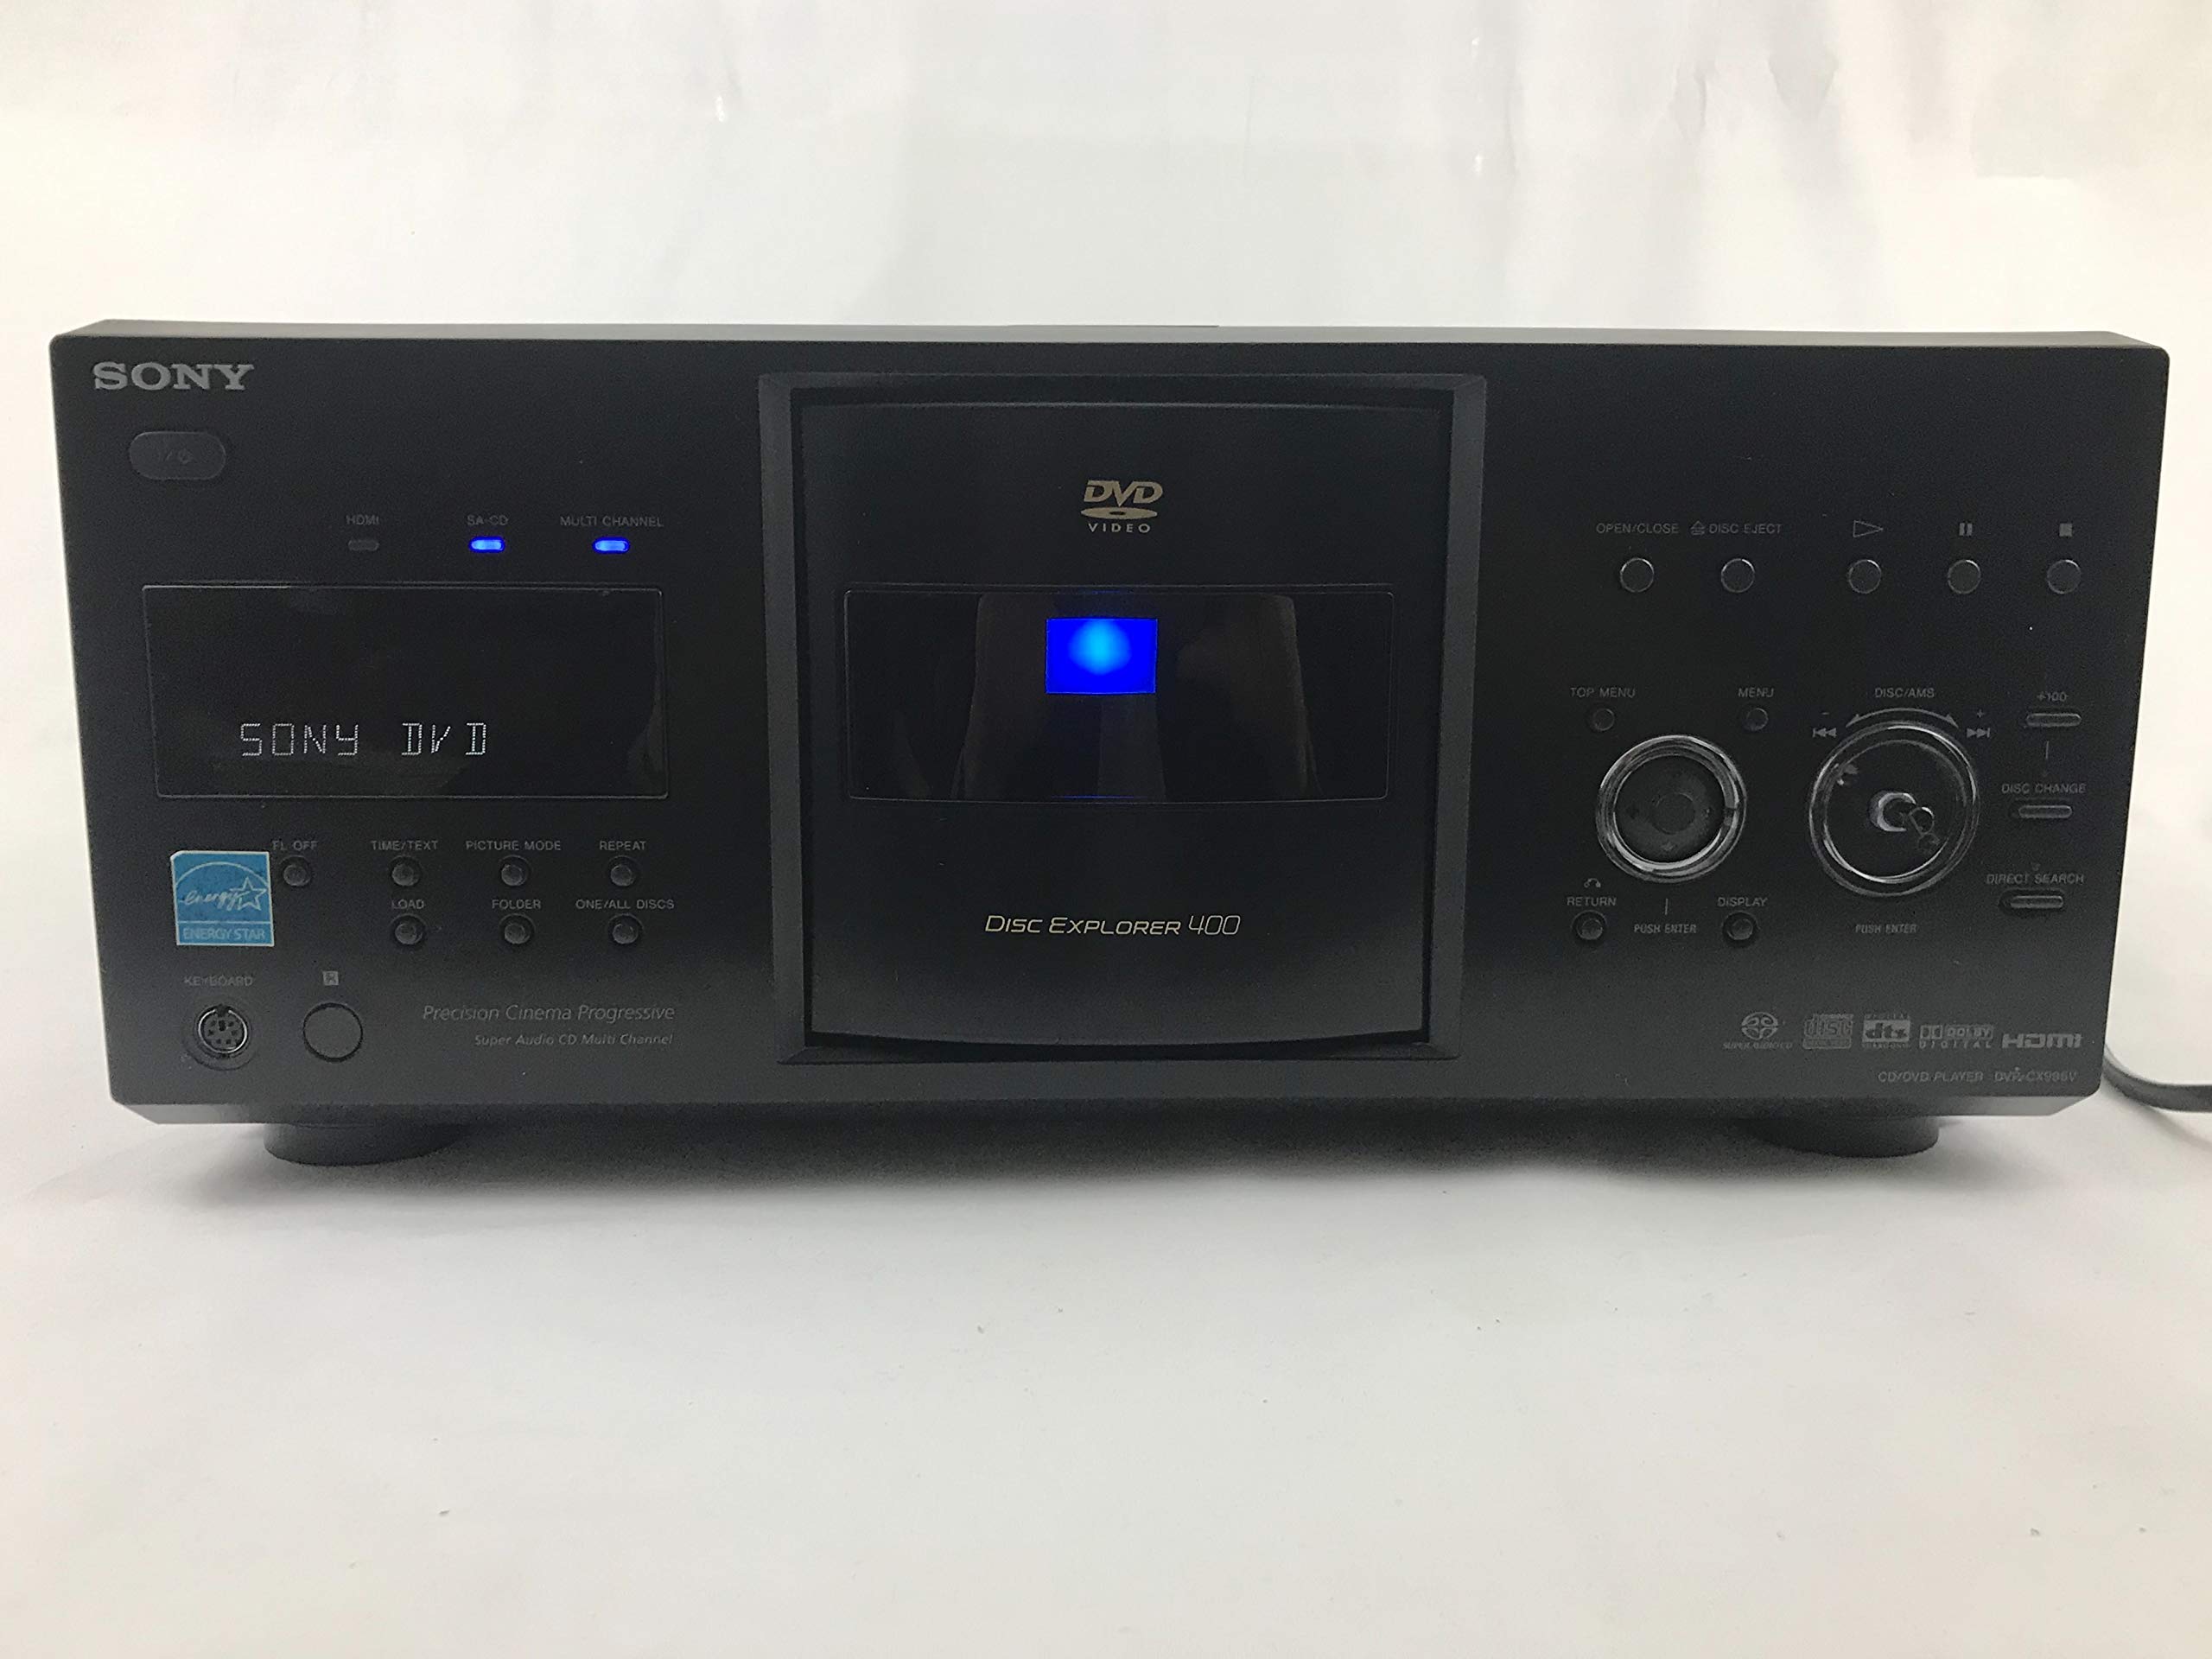 Sony DVPCX995V 400-Disc DVD Mega Changer/Player (2009 Model) (Renewed)